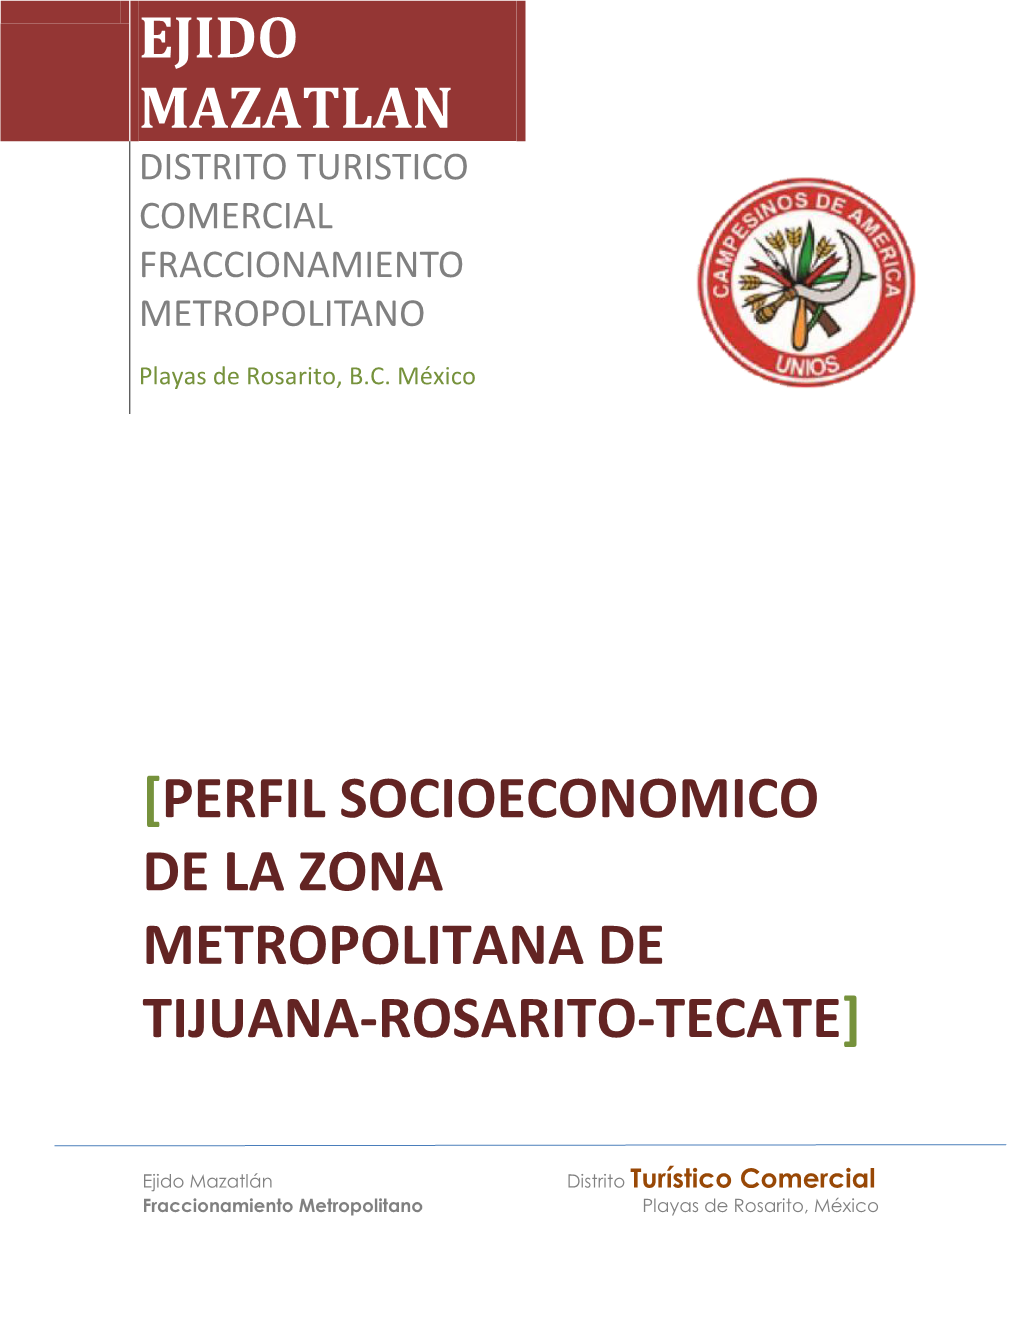 Perfil Socioeconomico De La Zona Metropolitana De Tijuana-Rosarito-Tecate]